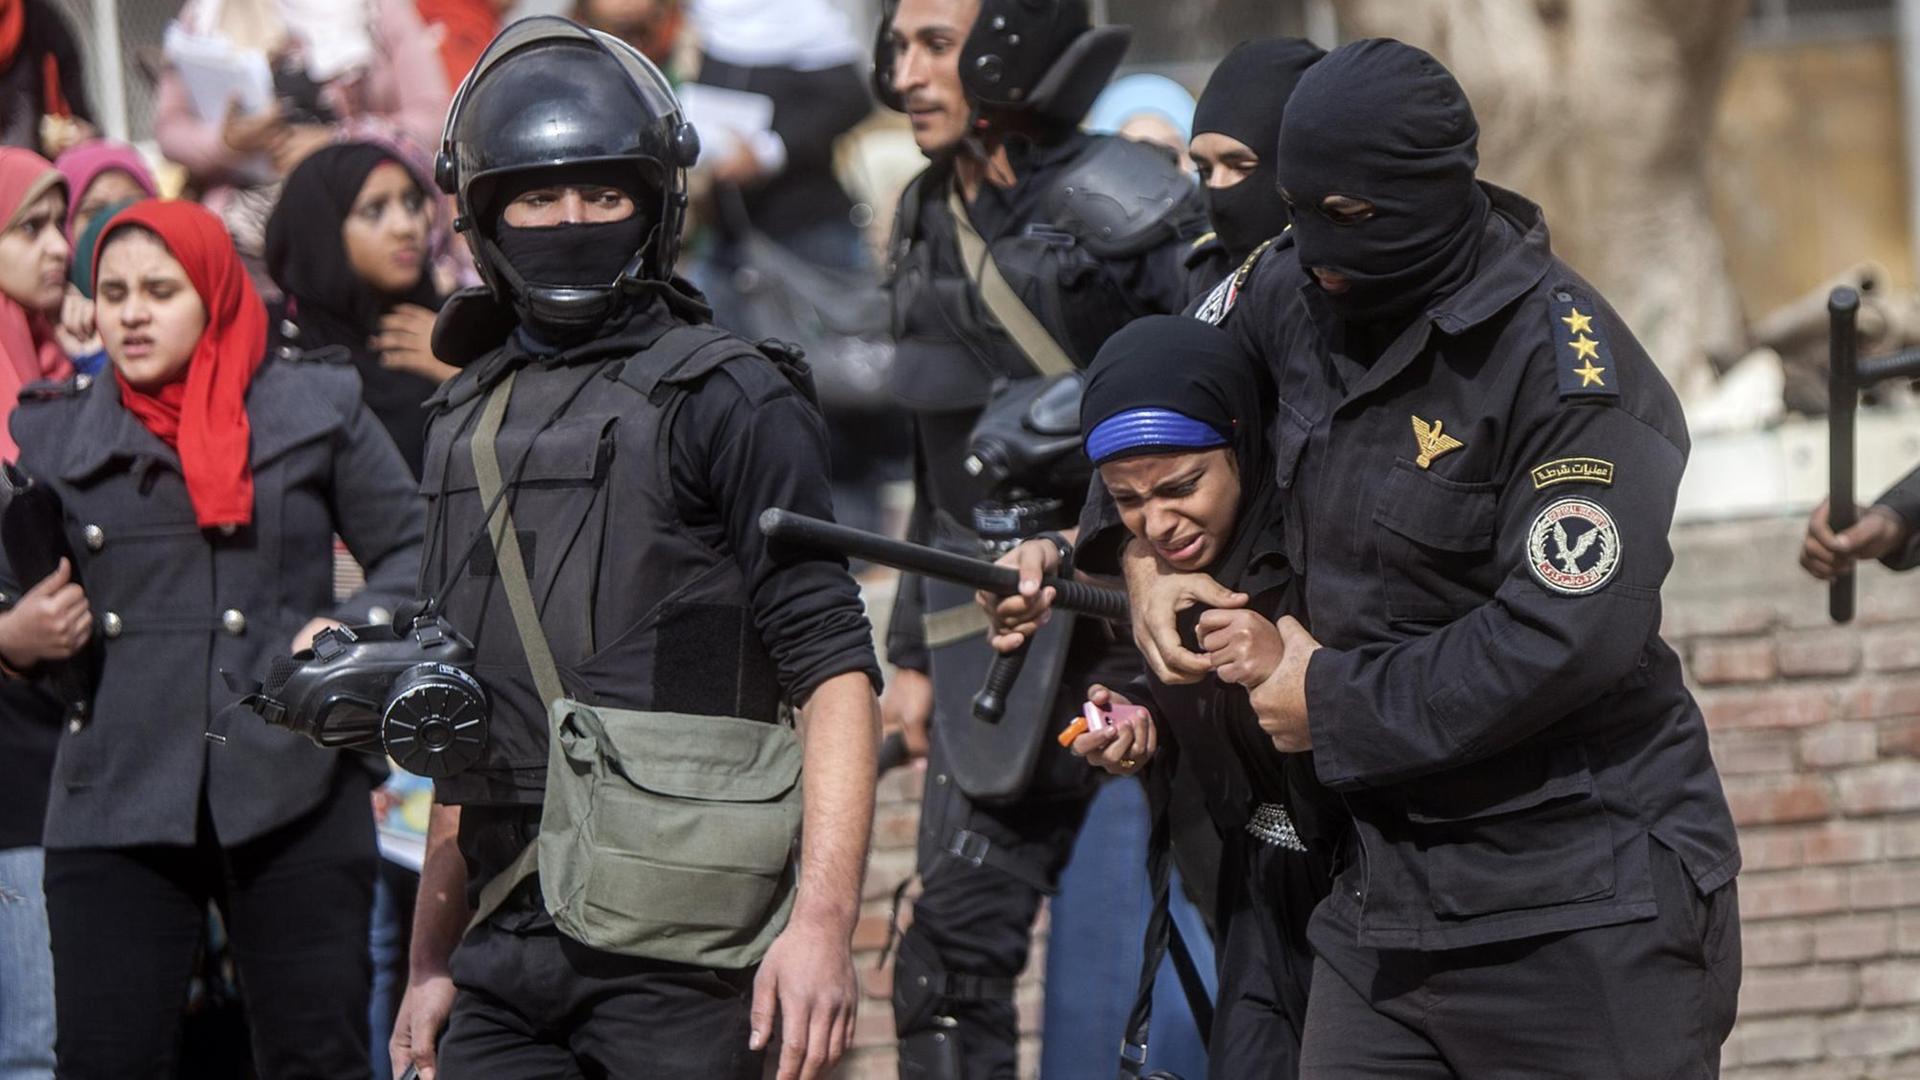 Ägypten nach dem Militärputsch 2013- der Film "Clash" beschreibt die Unruhen mit einem Kammerspiel der besonderen Art